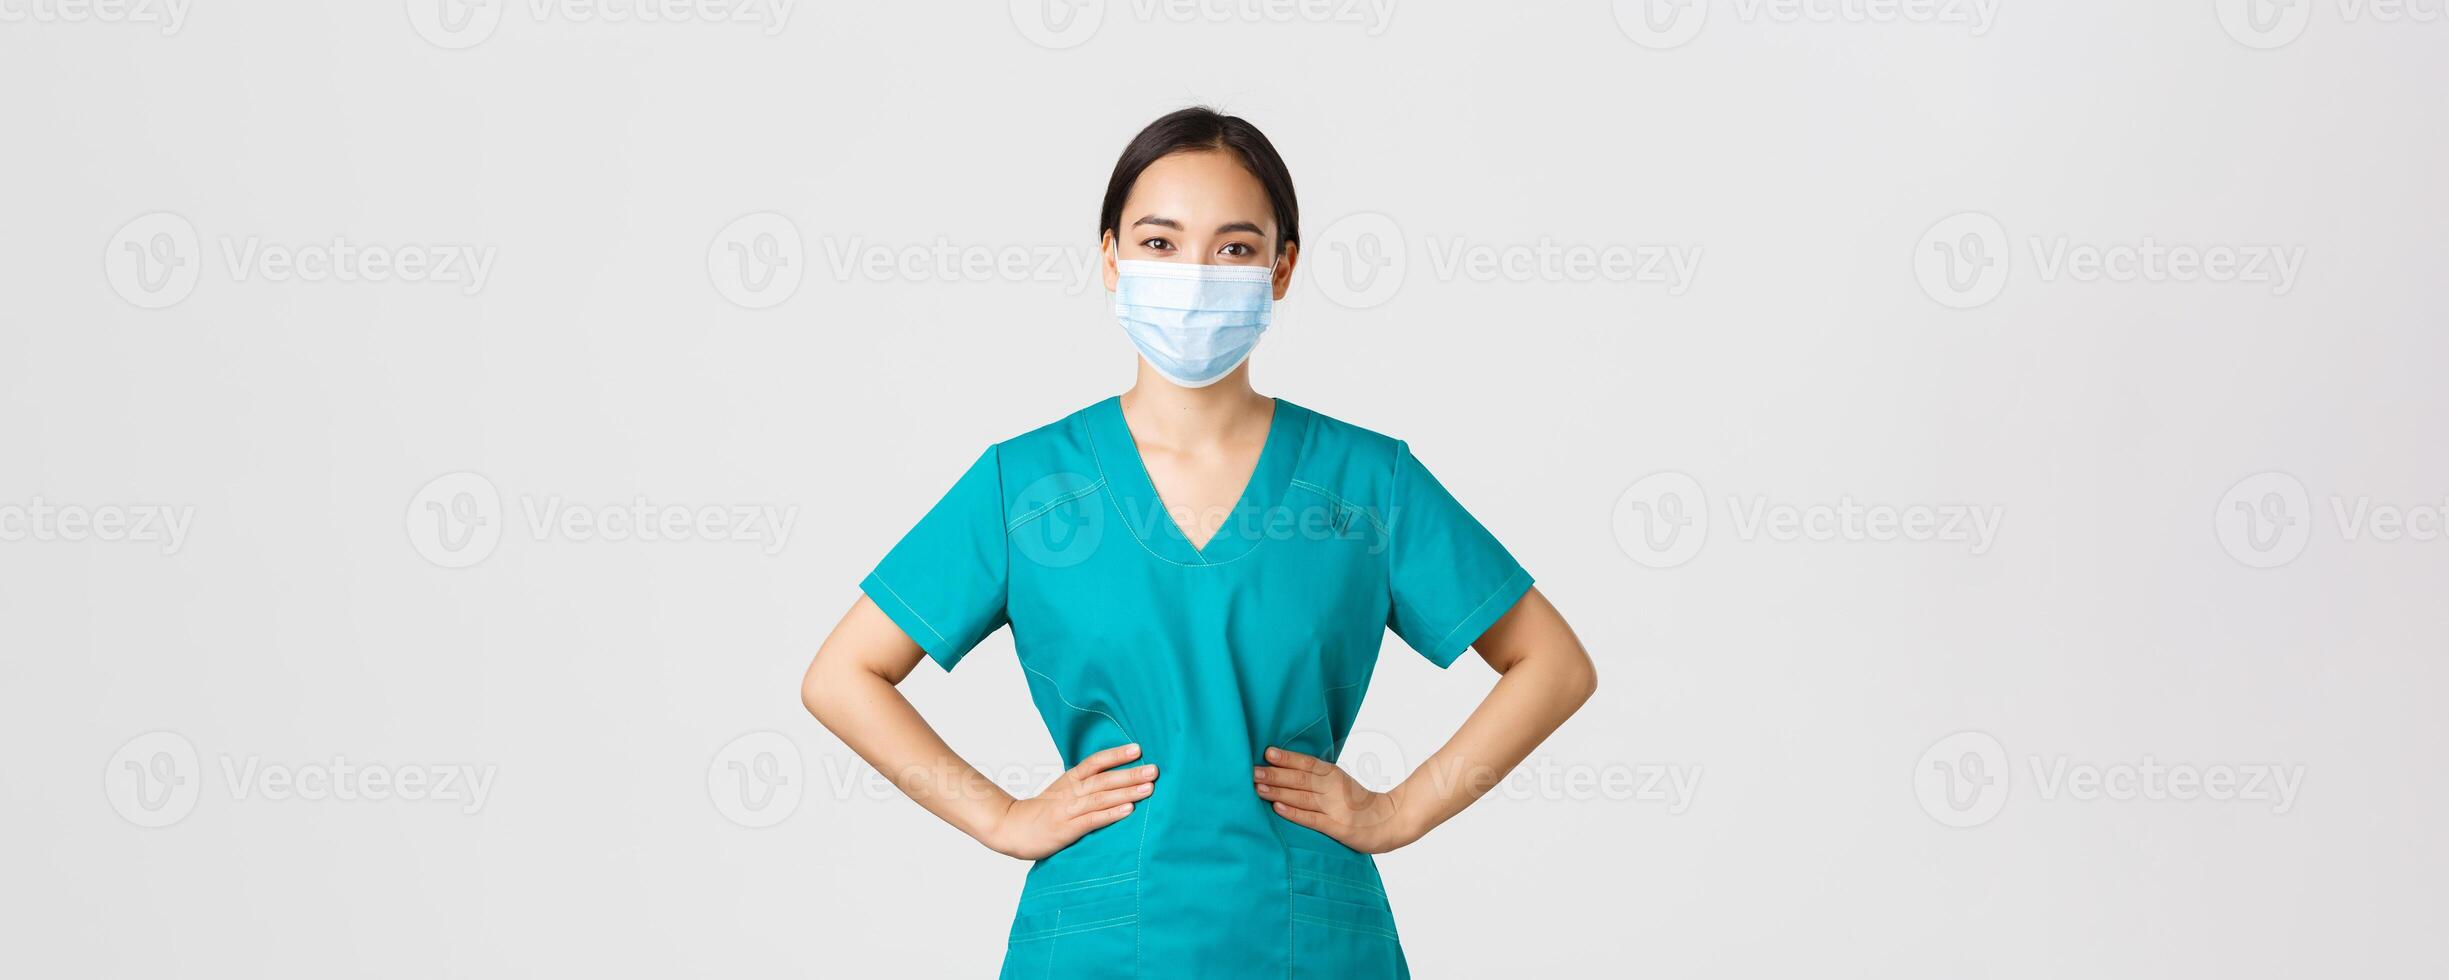 COVID-19, Coronavirus Krankheit, Gesundheitswesen Arbeitskräfte Konzept. heiter lächelnd asiatisch weiblich Arzt, Arzt im Peelings und medizinisch Maske, suchen optimistisch, Arbeiten mit Patienten im Krankenhaus foto